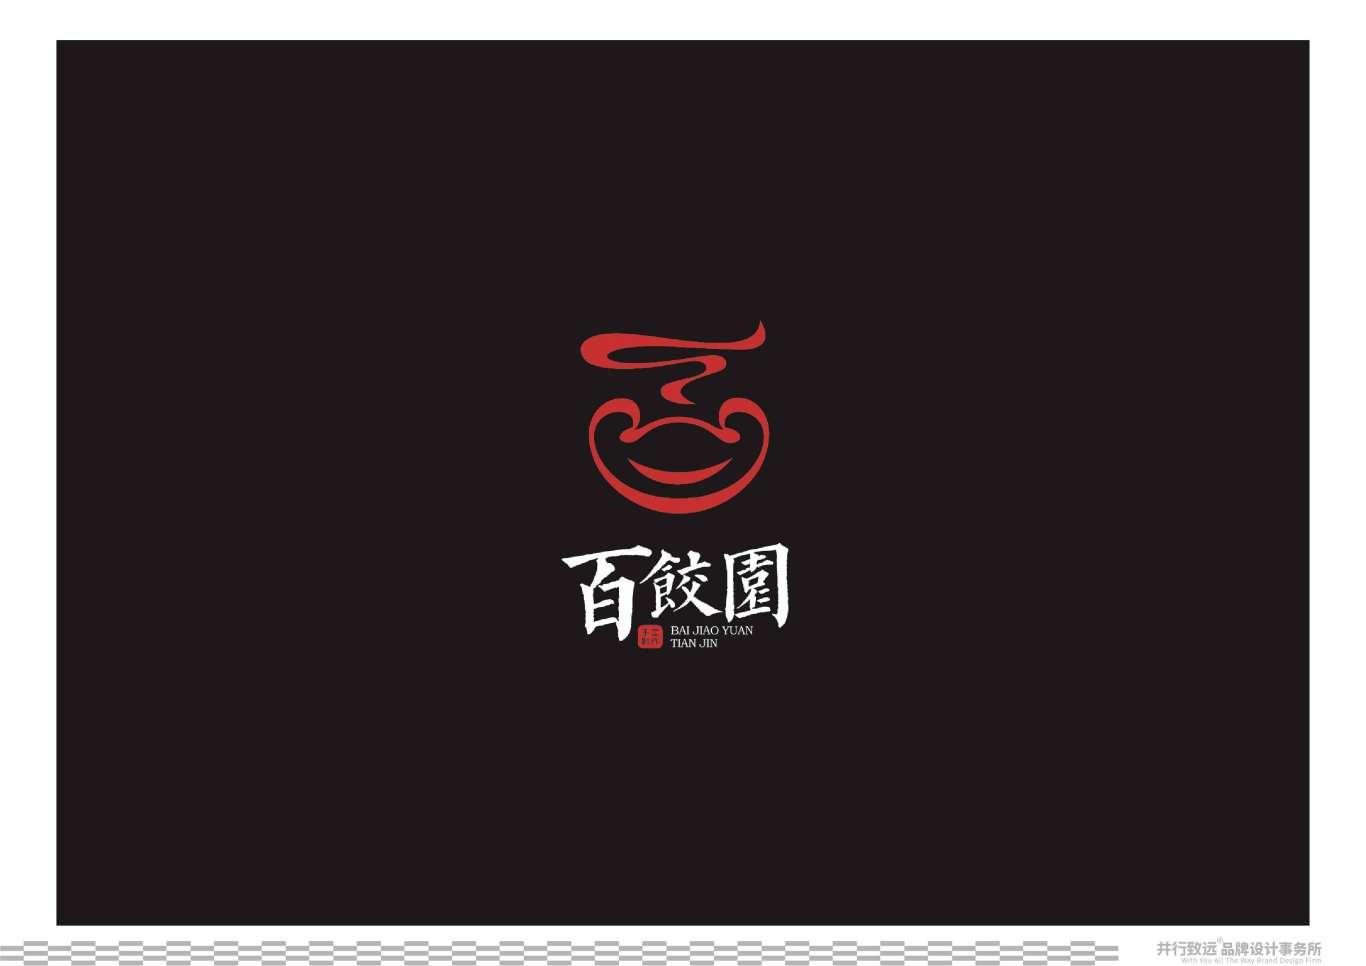 天津百餃園logo升級設計圖30